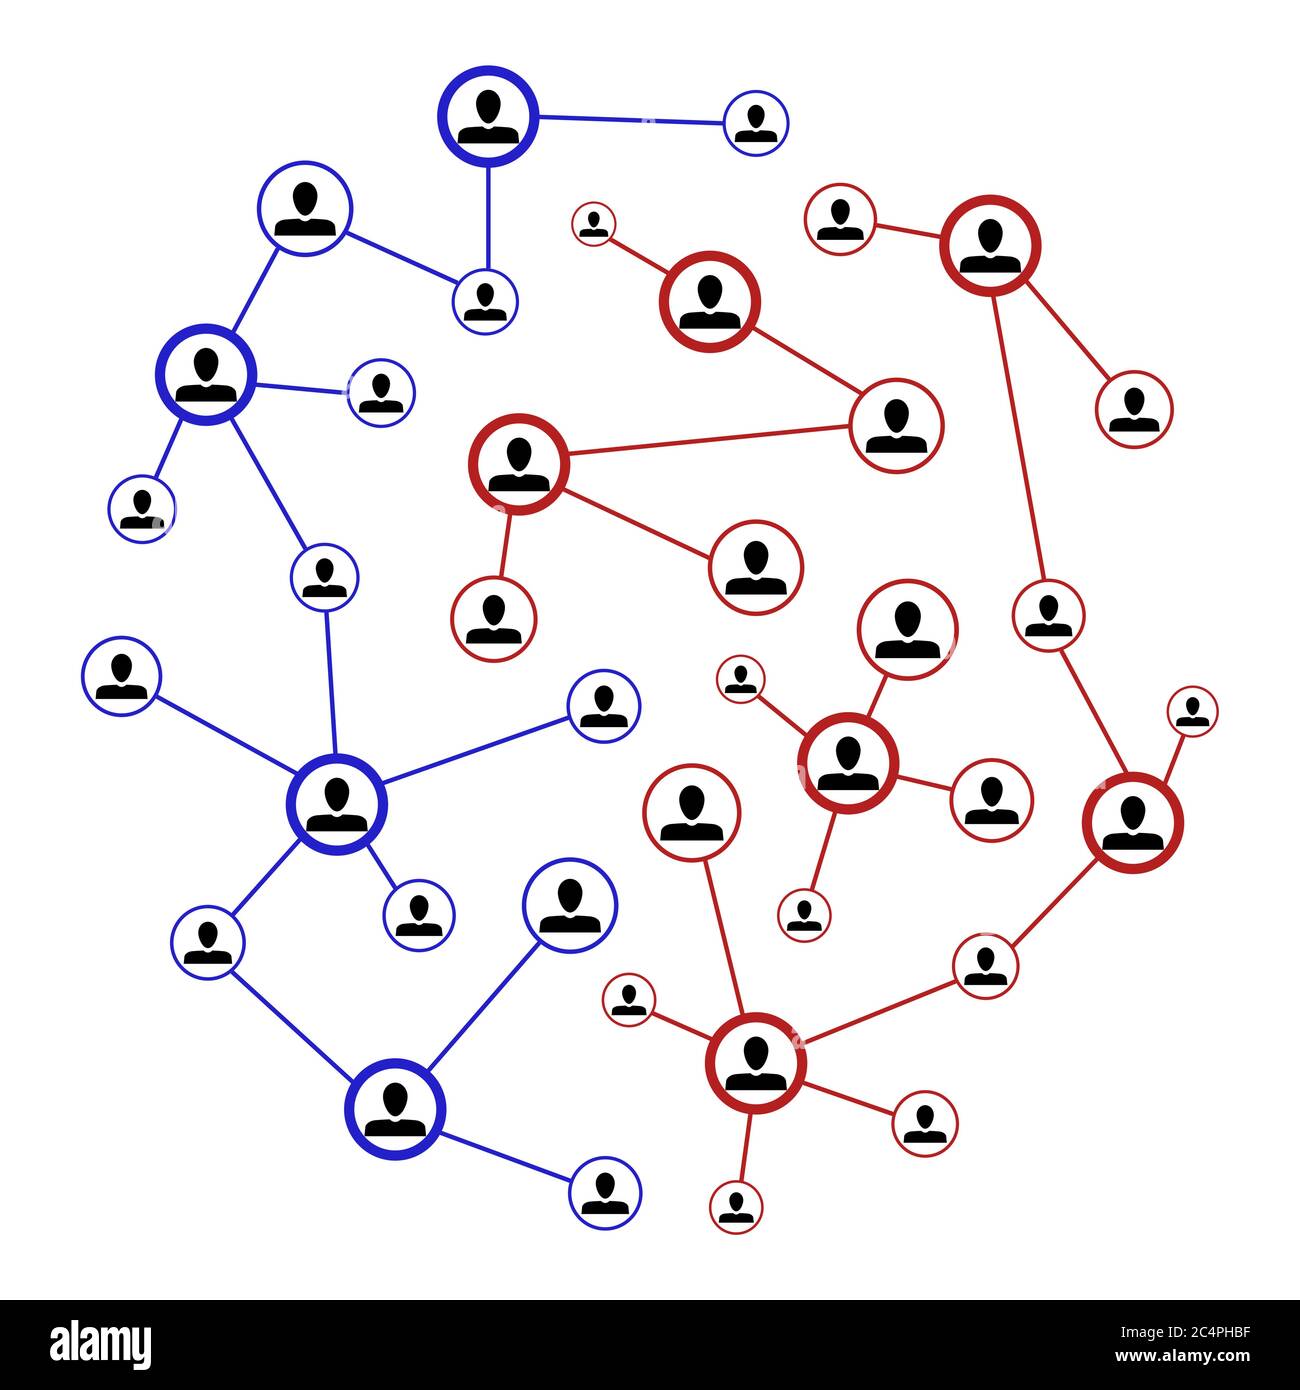 Réseau de connexion, communauté sociale Internet mondiale. Illustration de la société web avec vecteur d'avatar humain Illustration de Vecteur